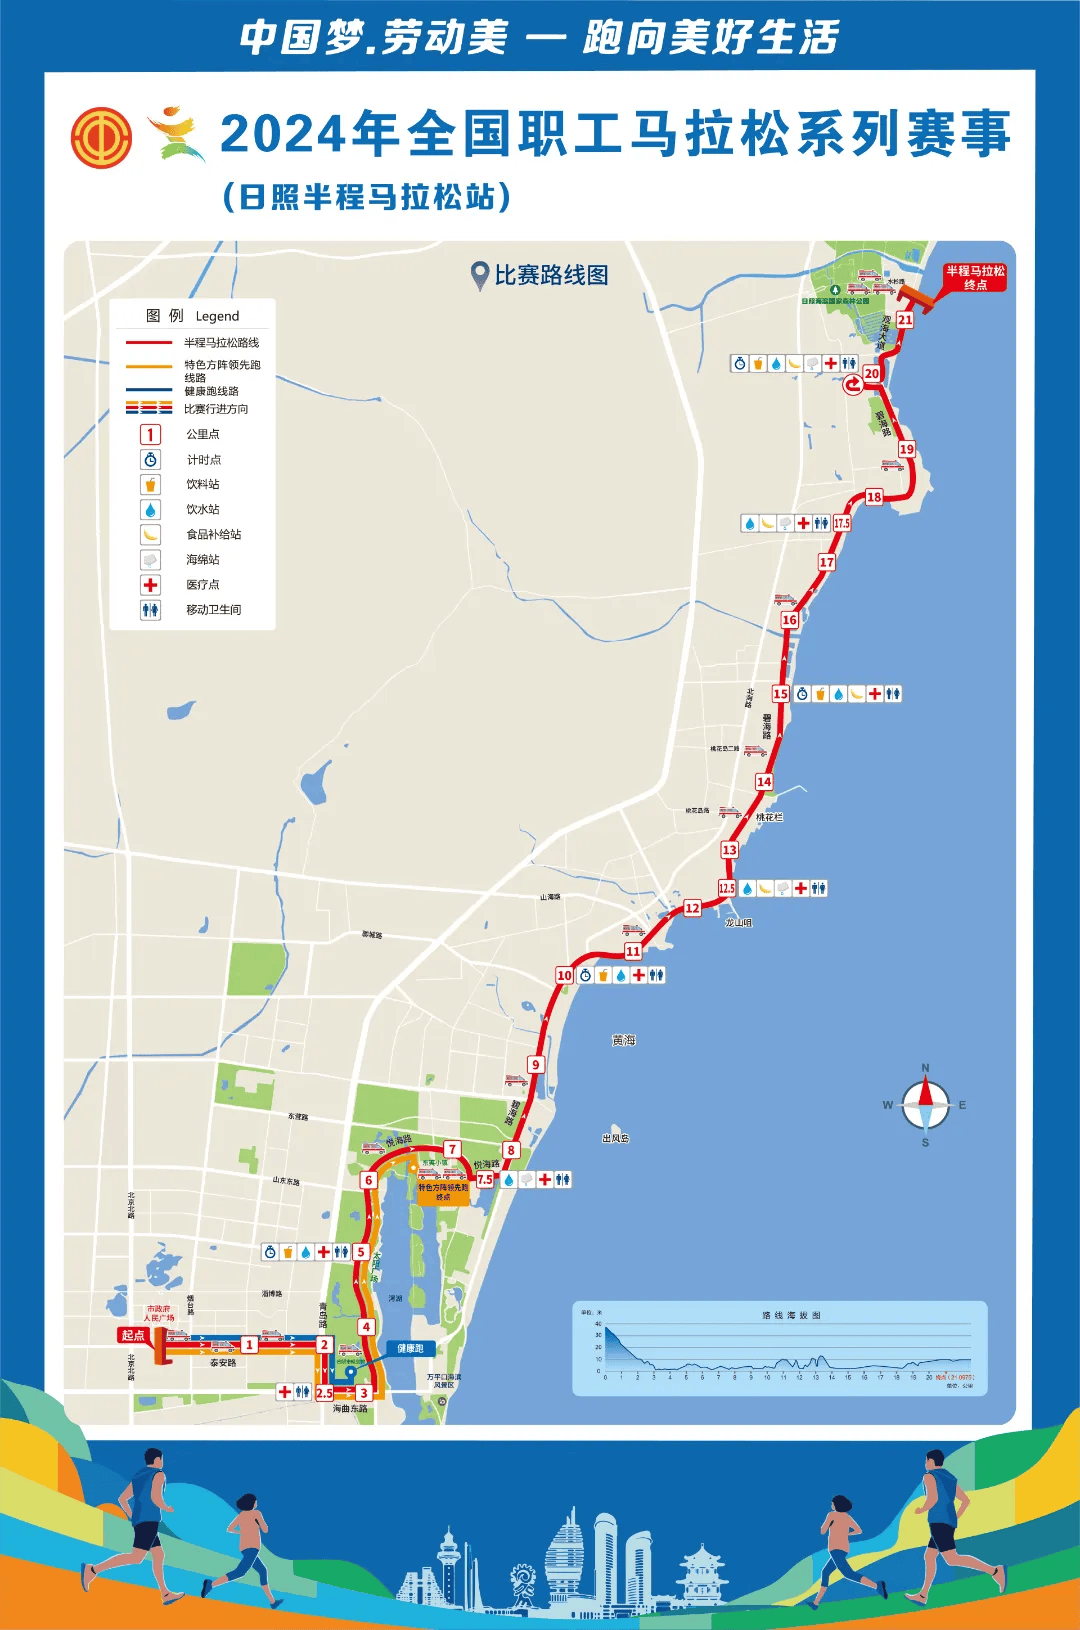 无锡马拉松路线图2021图片